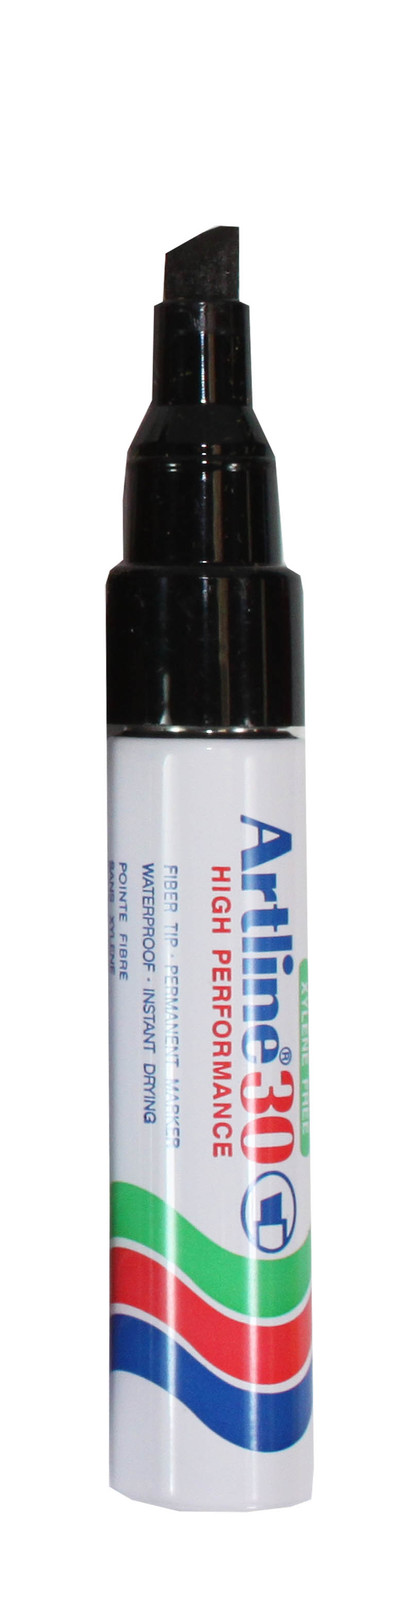 Artline 30 Chisel Permanent Marker - Black